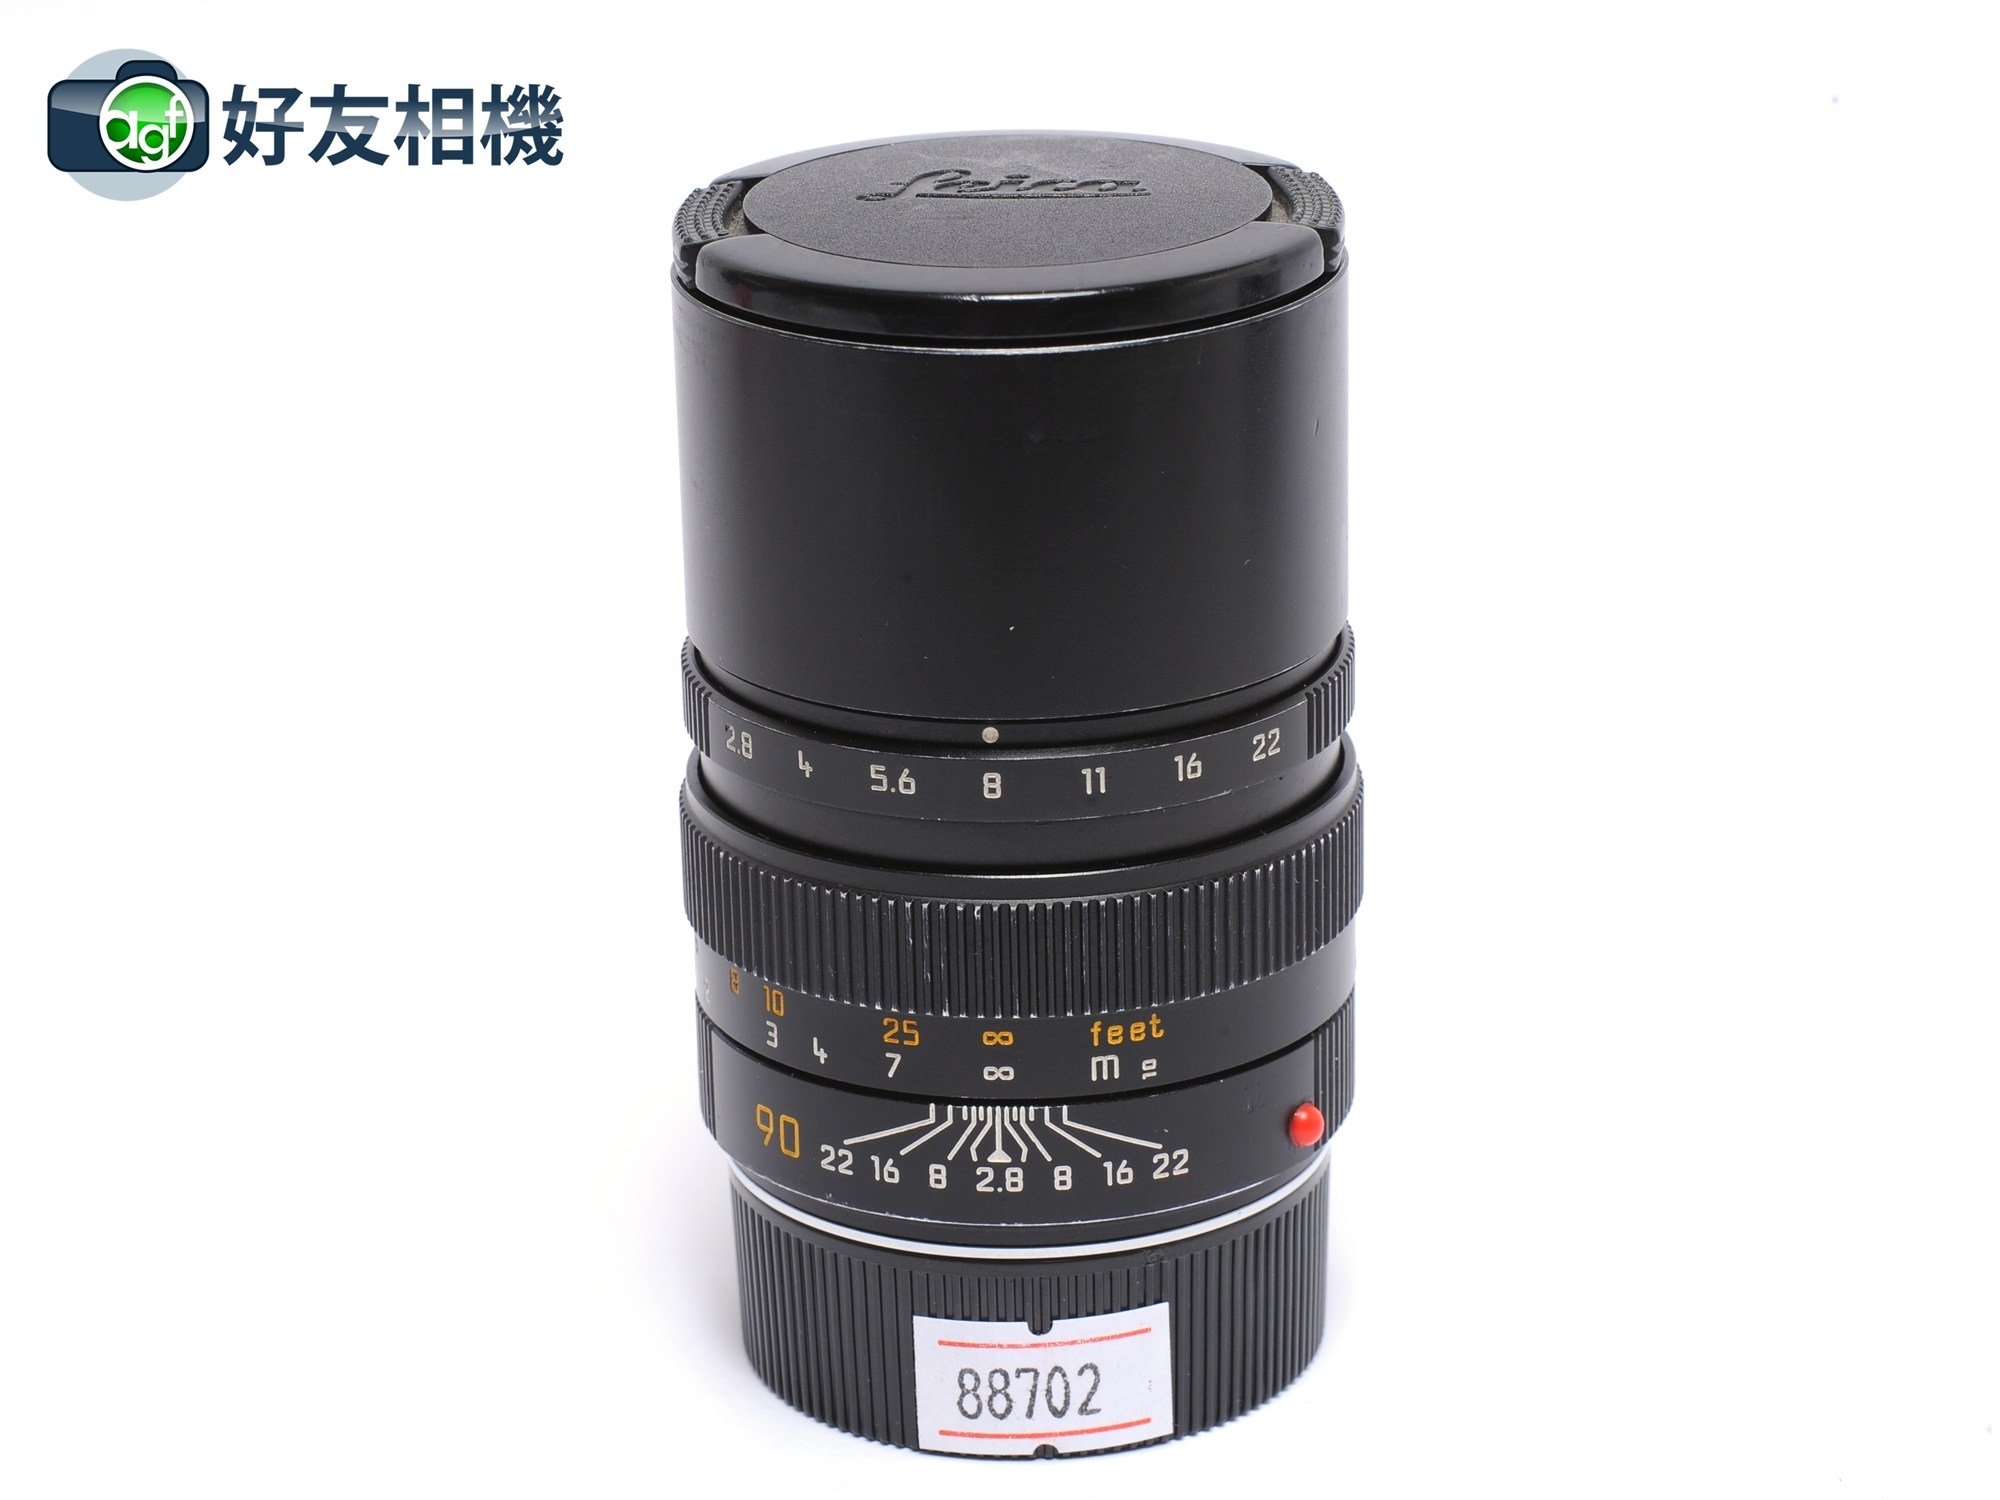 徕卡/Leica Elmarit-M 90/2.8 E46 镜头 第二代 90mm 定焦